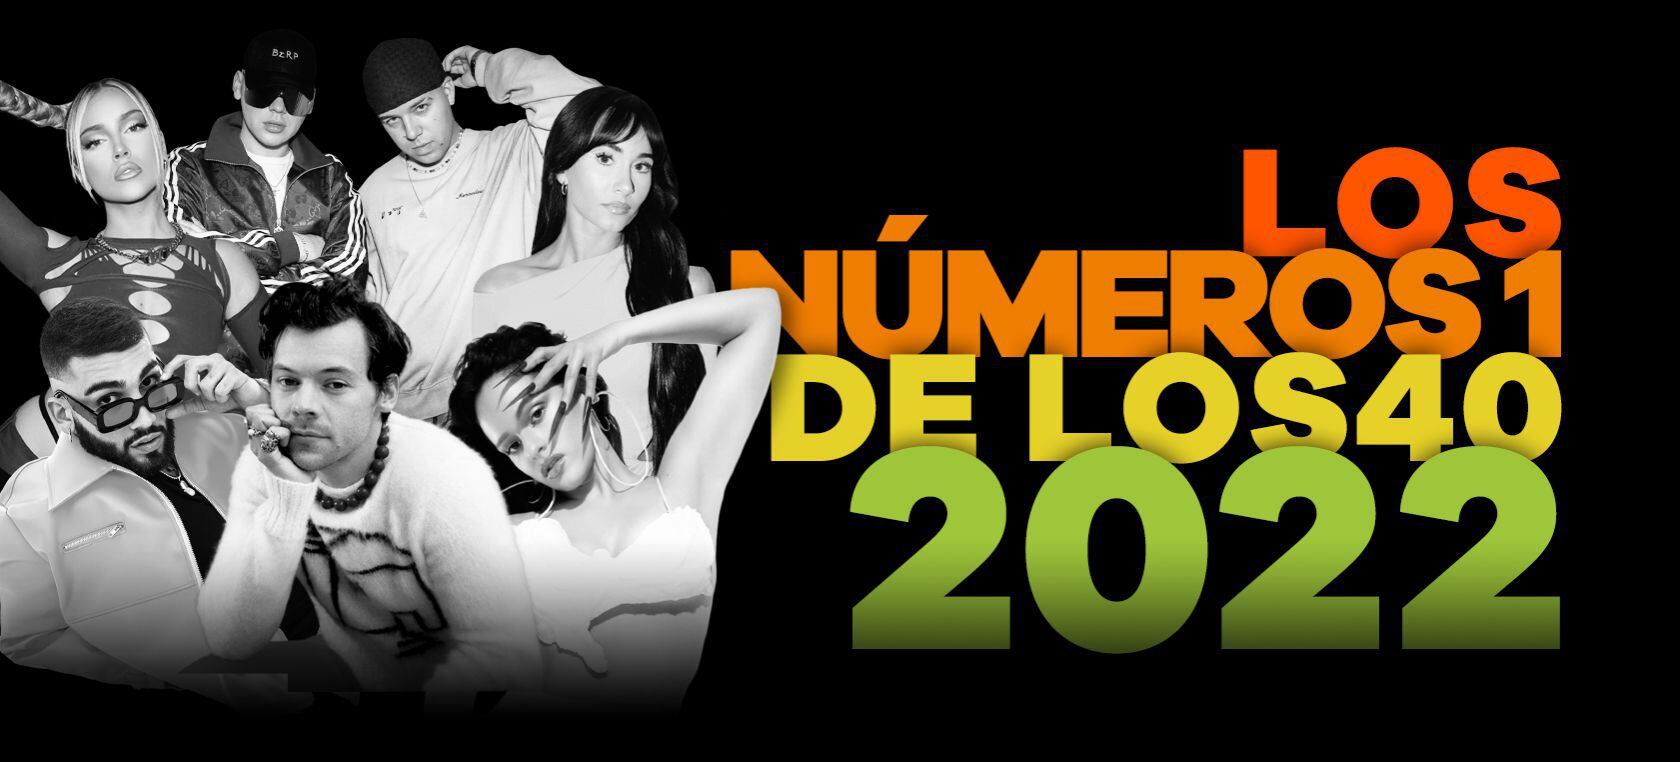 40 DANCE HITS 2022 - Independientes: Recopilatorios, Álbumes Nacionales -  Todo sobre música Dance